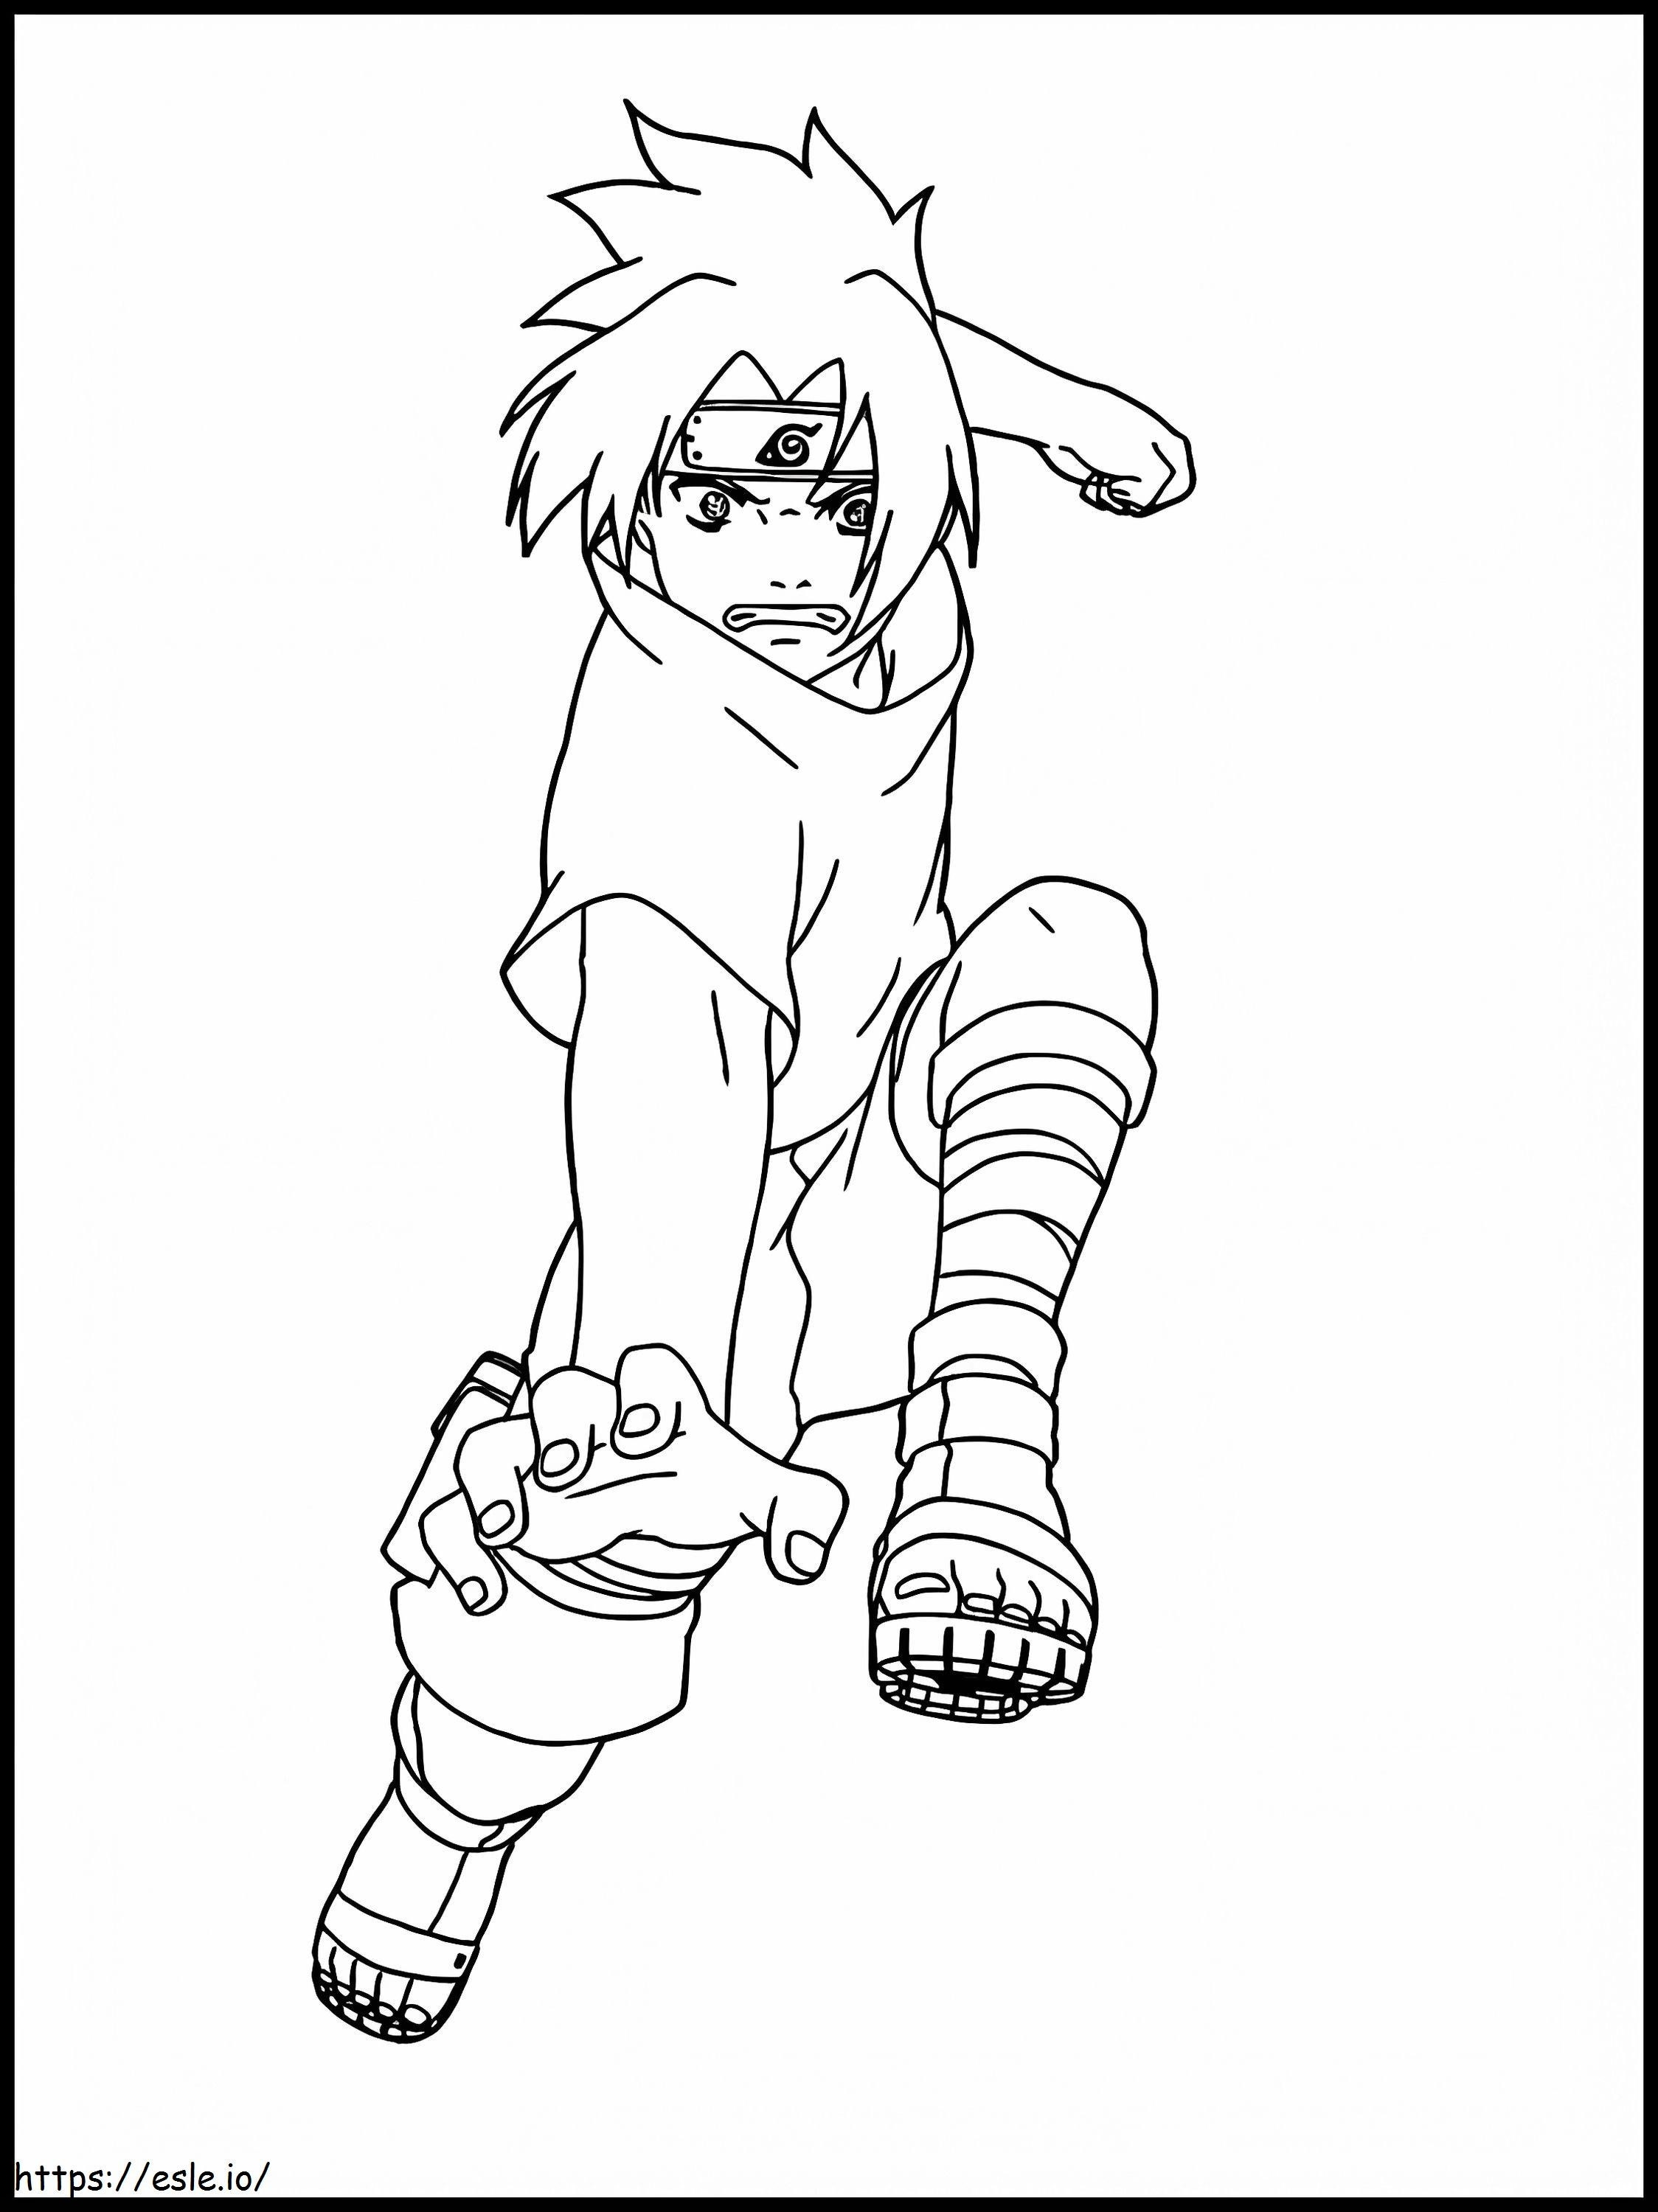 Sasuke Attaque coloring page